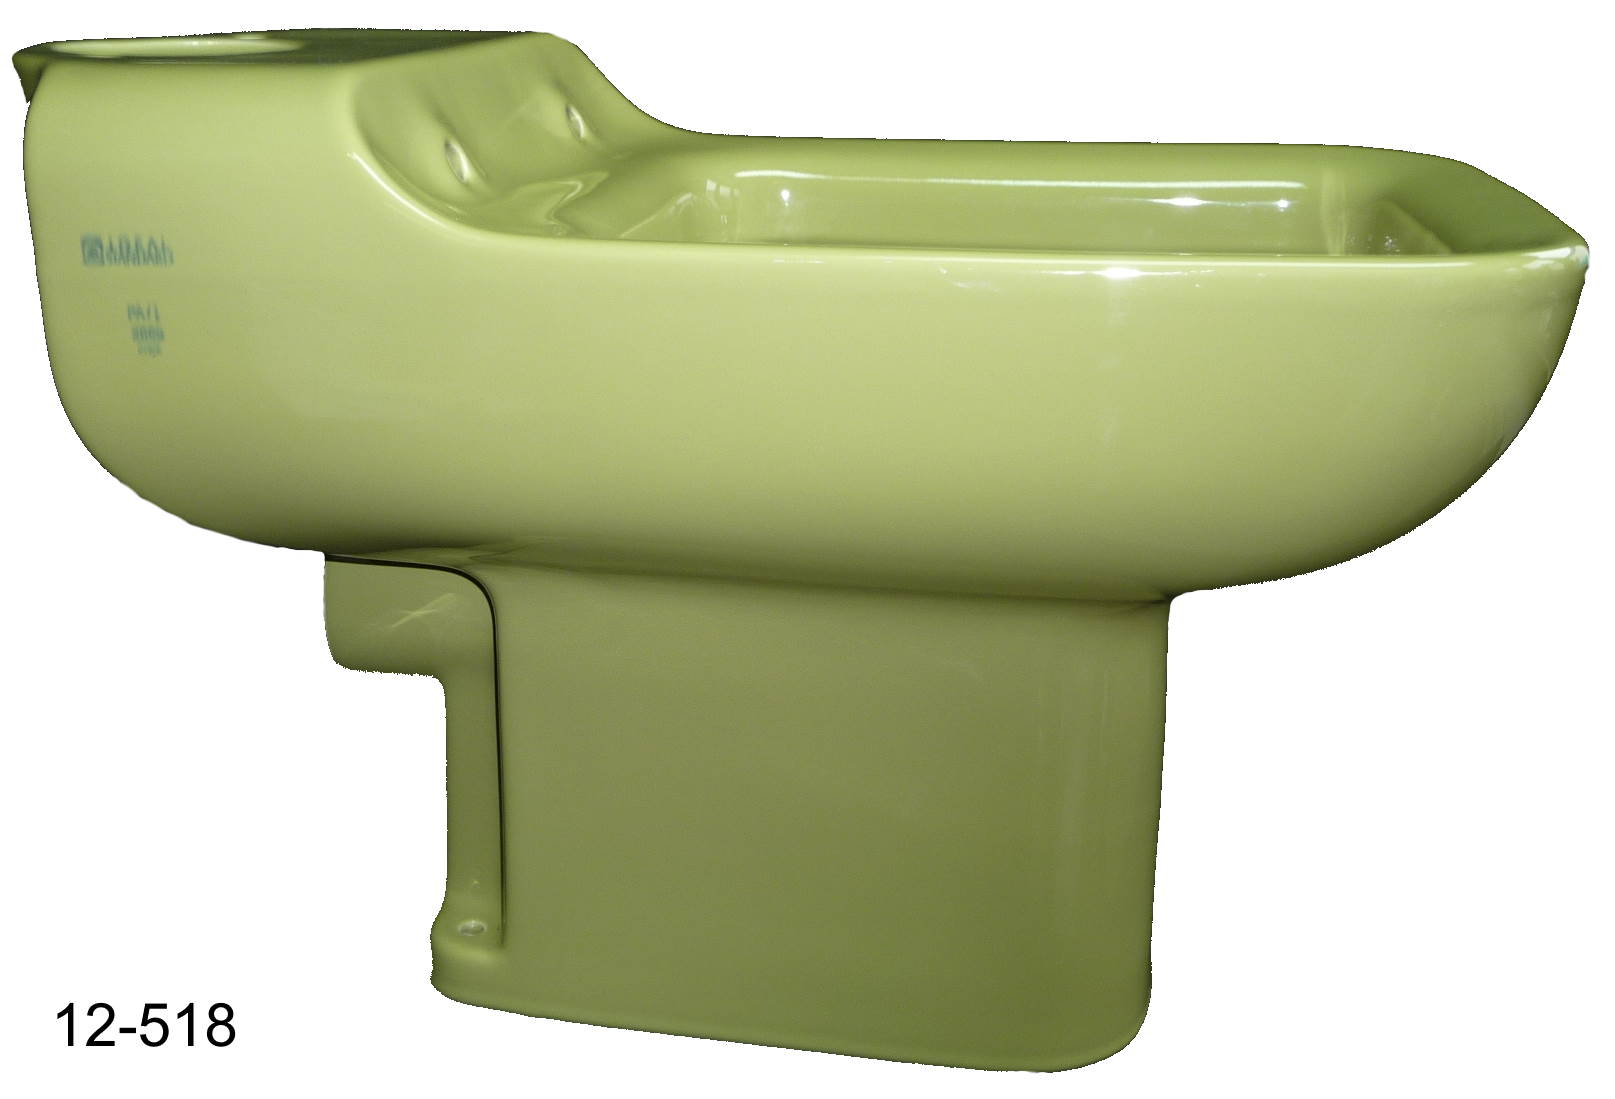 Stand WC Komplett Set Tiefspüler Universal Stand WC Farbe moosgrün olivgrün 